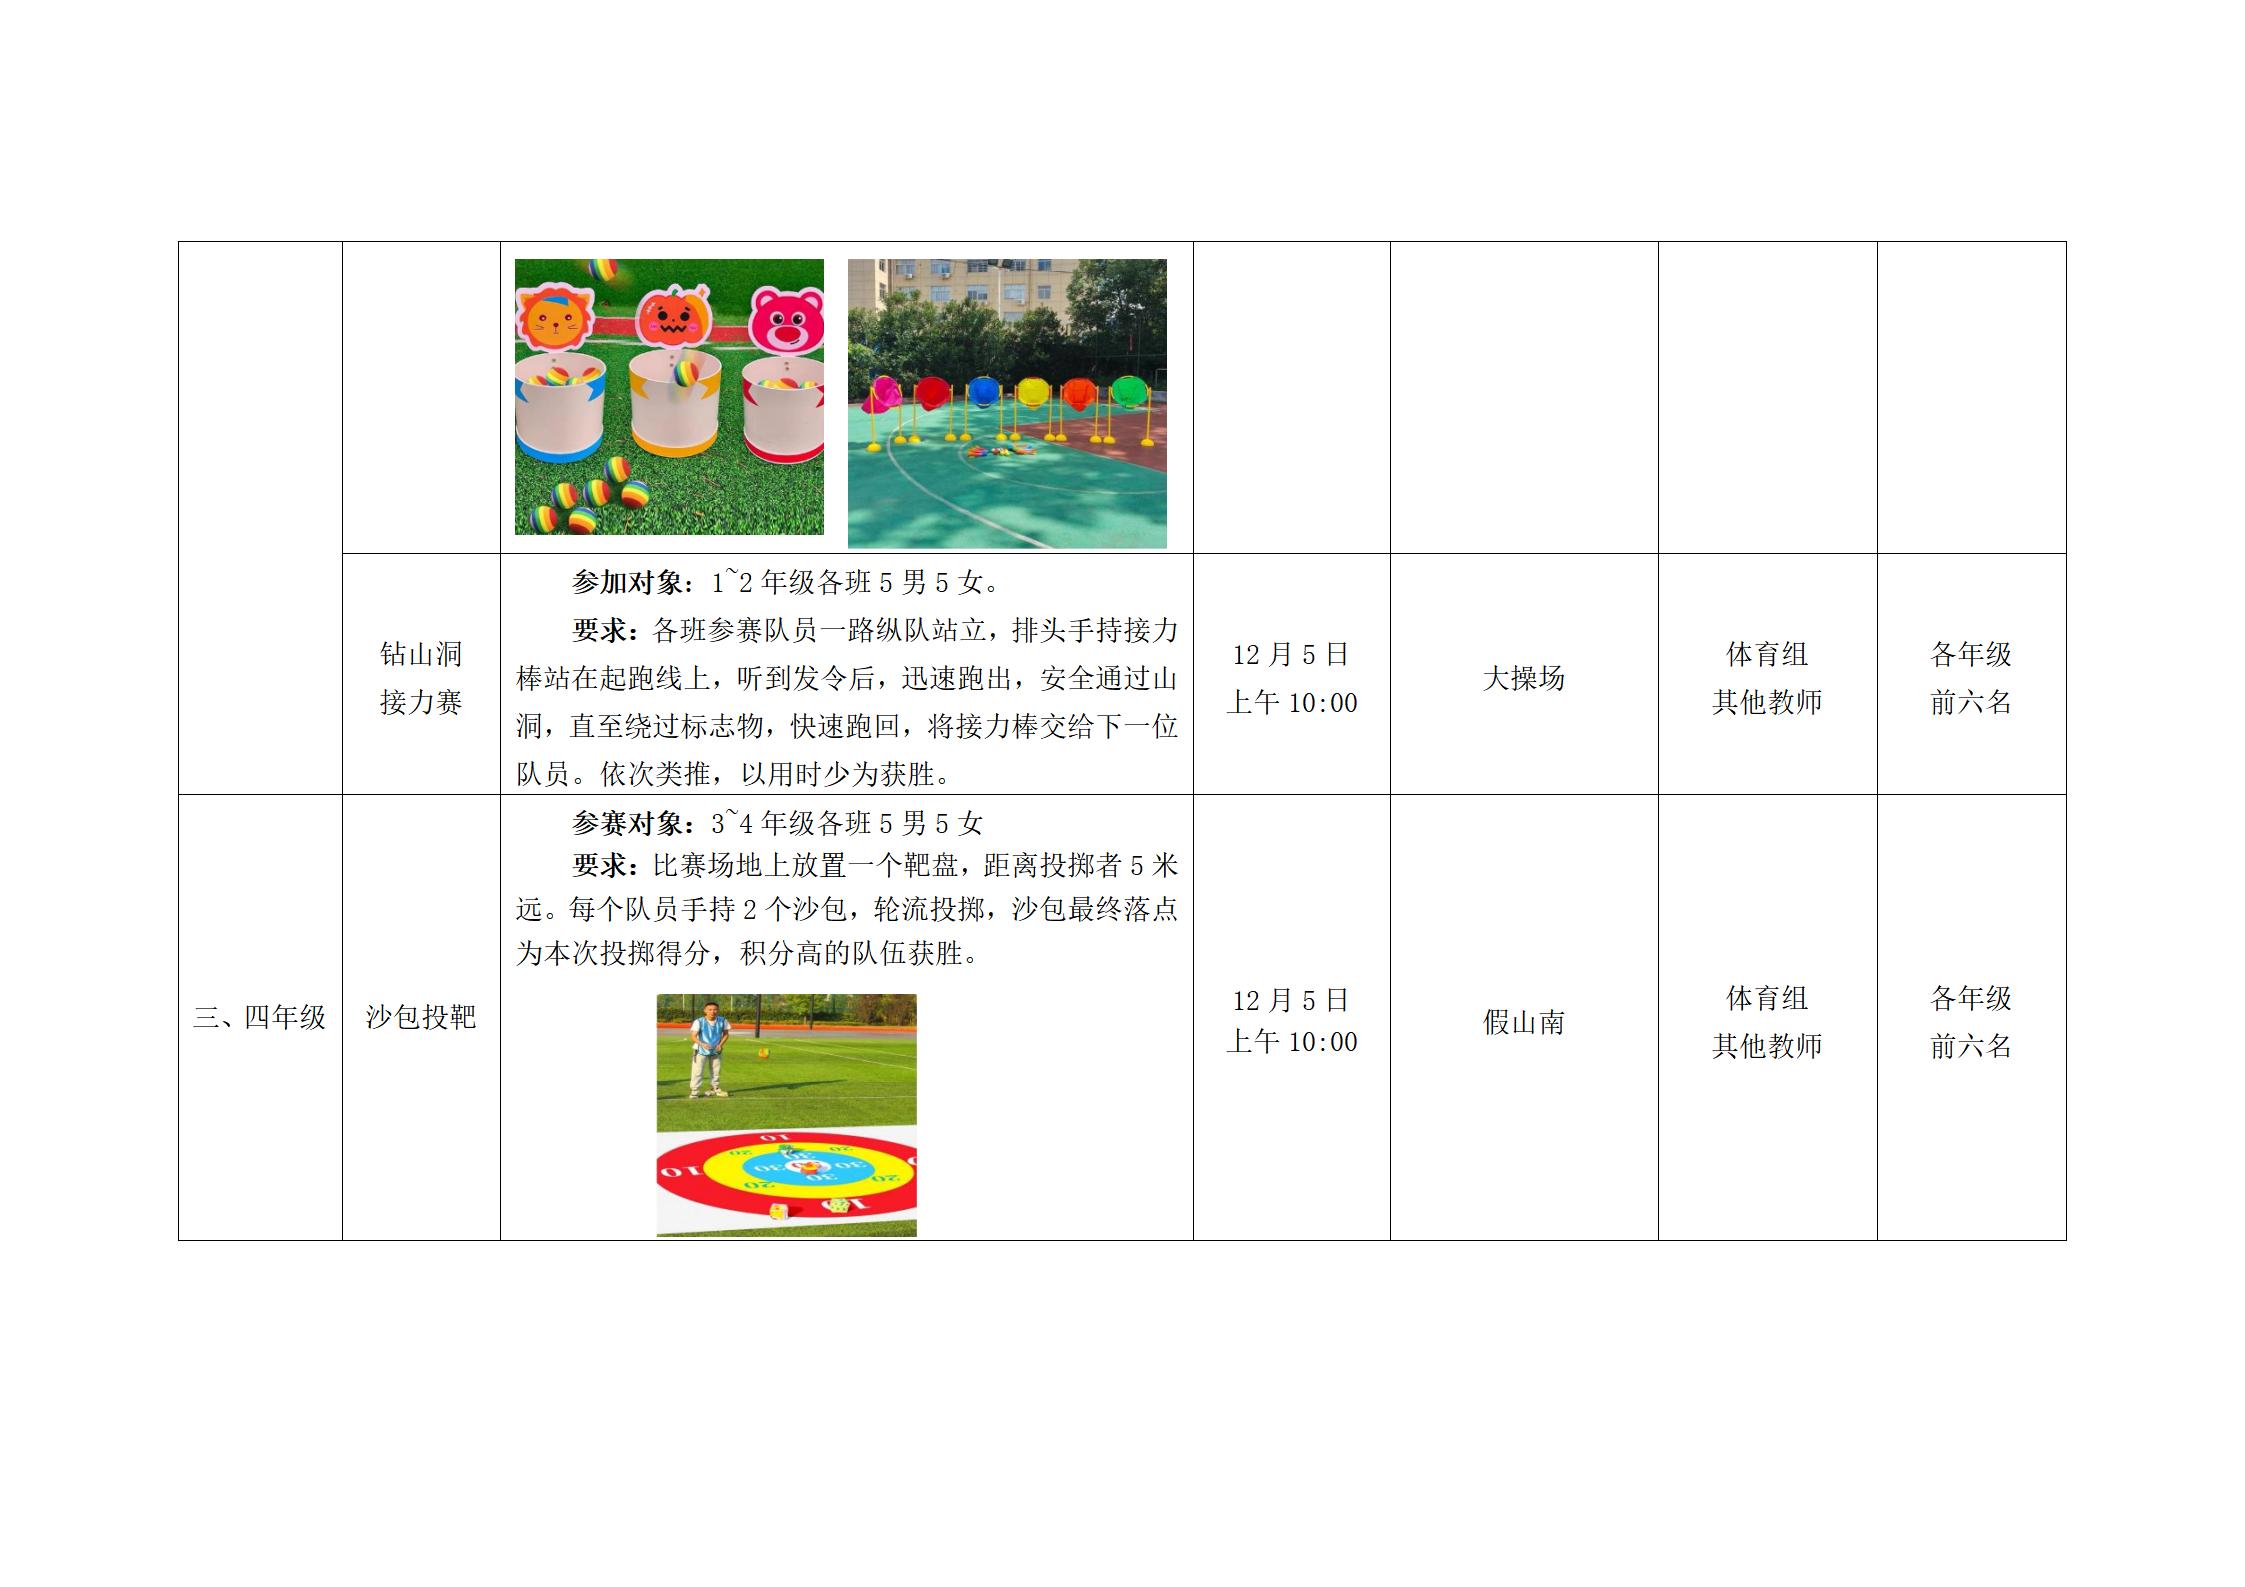 周庄实验小学冬季体育传统游戏趣味运动会方案、成绩通报_02.jpg